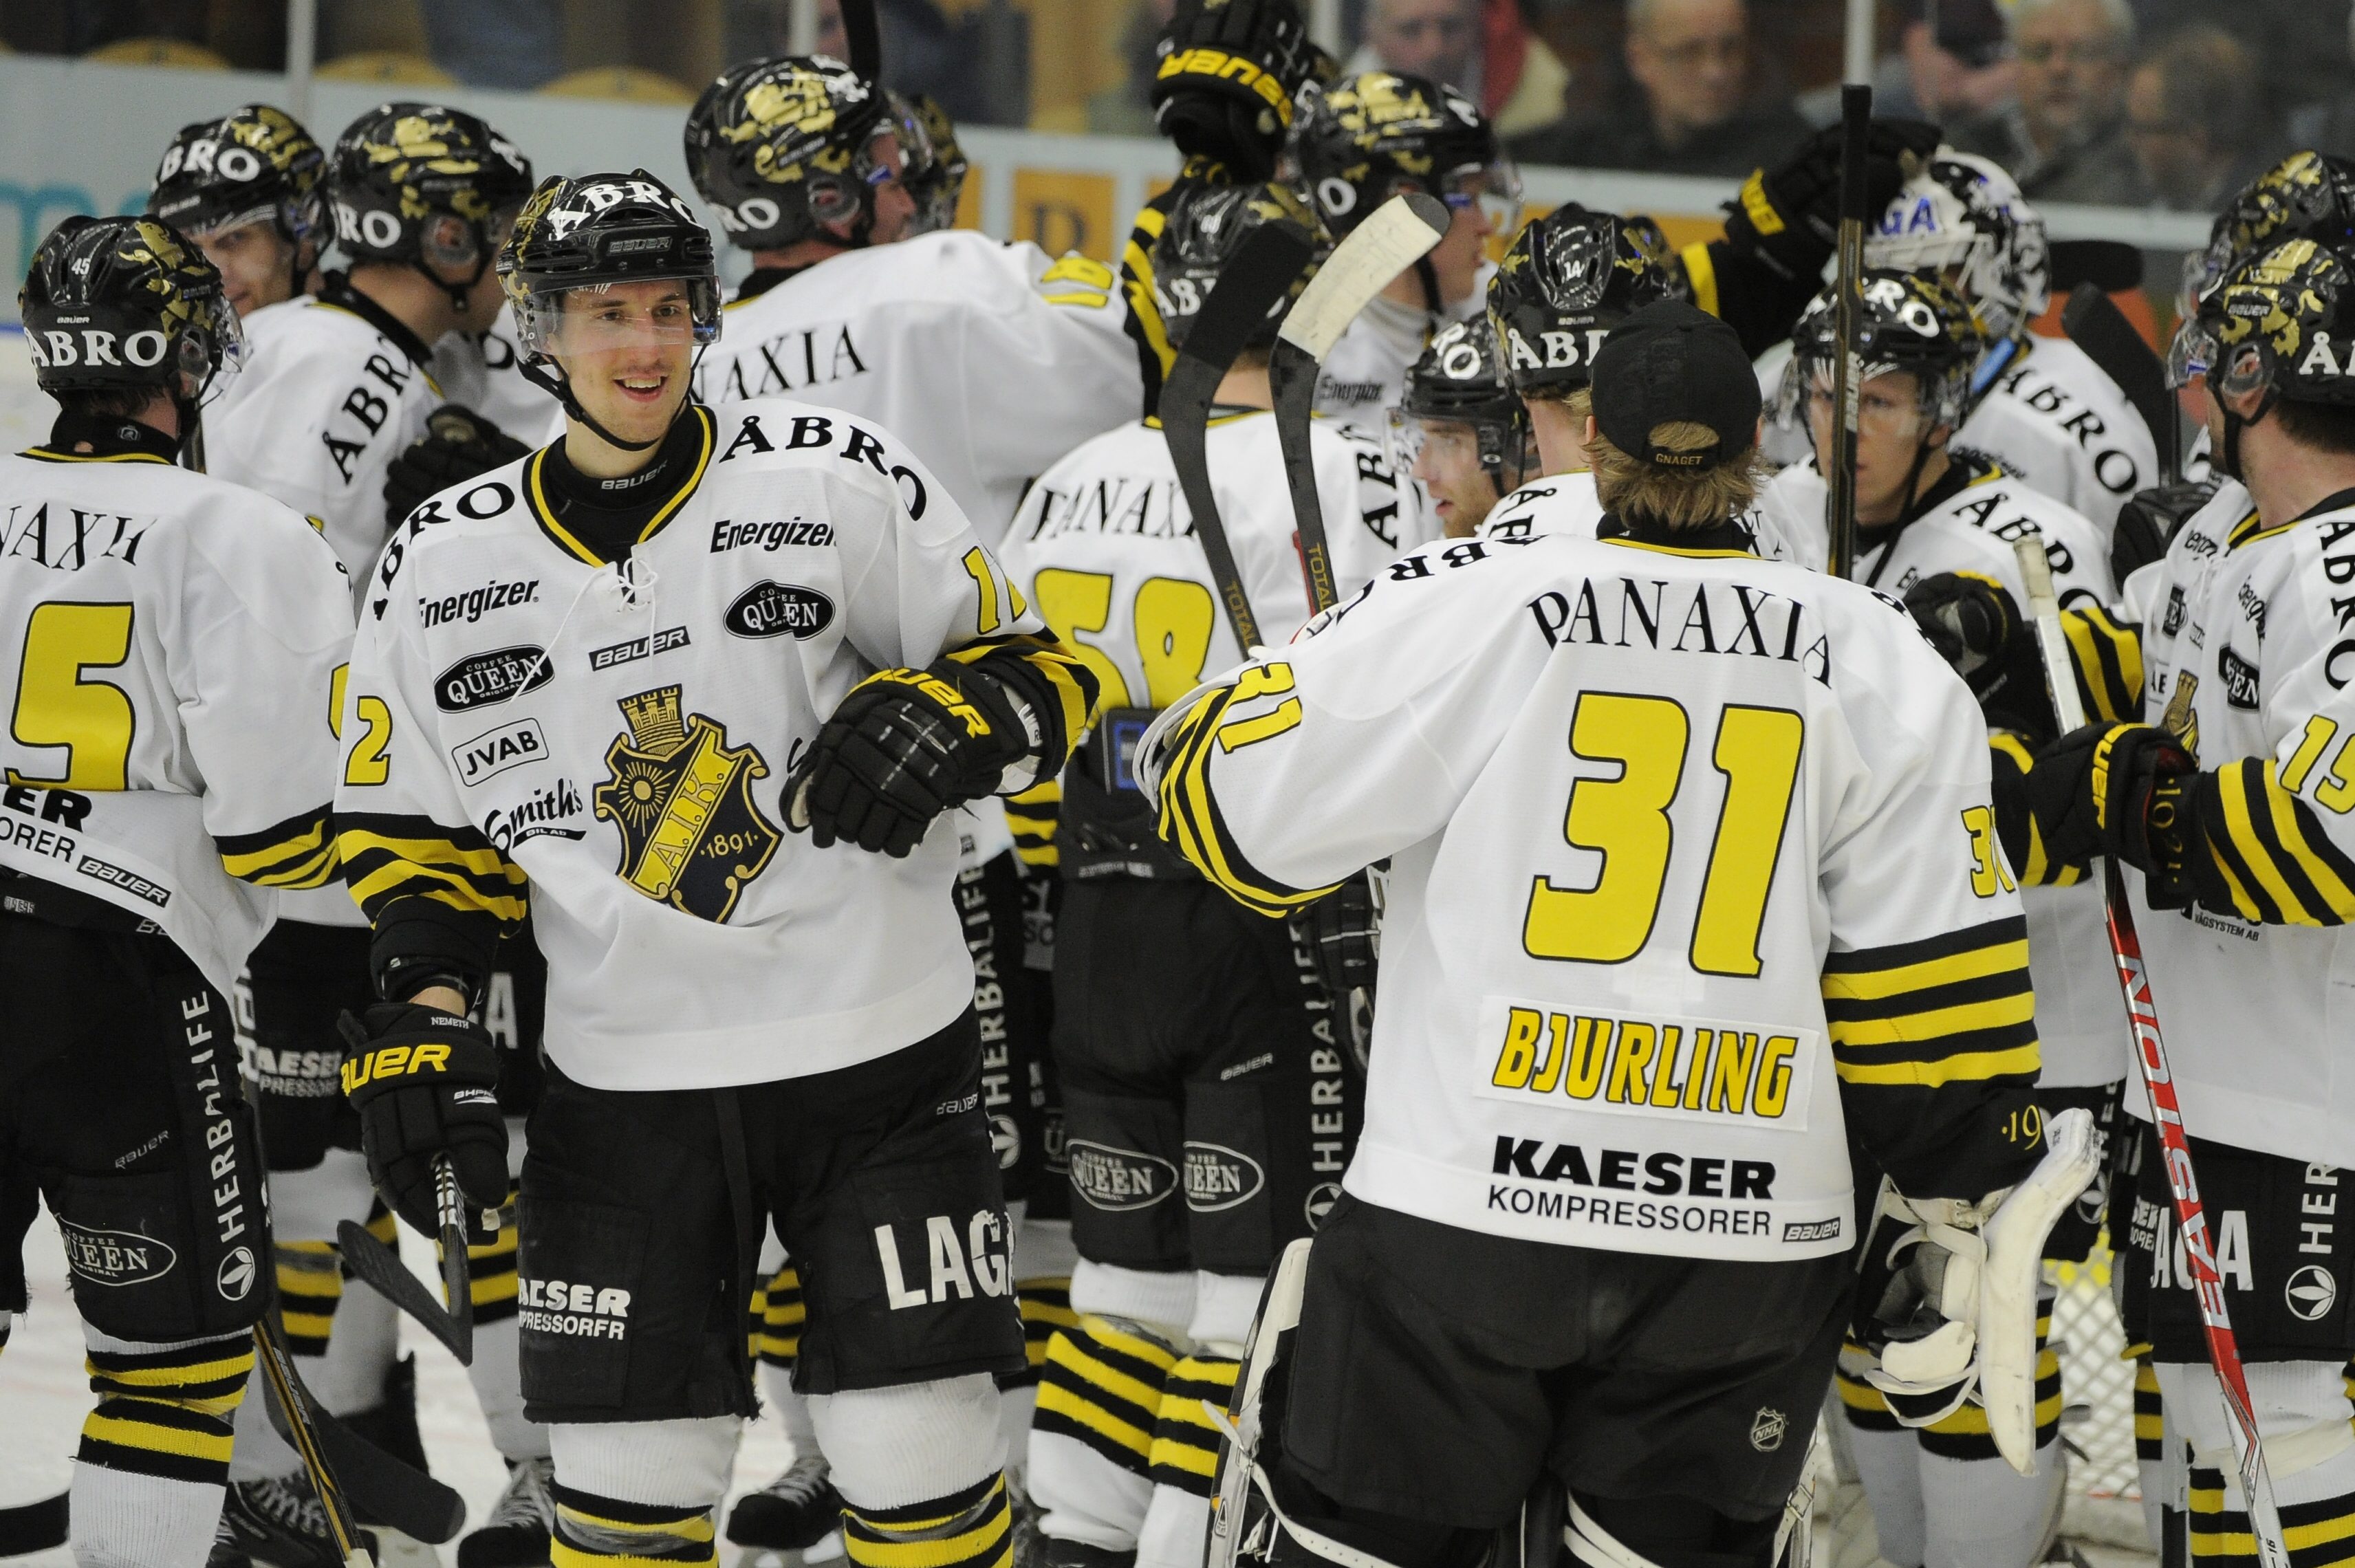 AIK chockade hela hockeysverige när de besegrade fjolårets mästare HV71. Mästarna som lekande lätt skulle segla genom kvartsfinalsserien får nu i stället ställa om siktet och sluta underskatta sina motståndare.